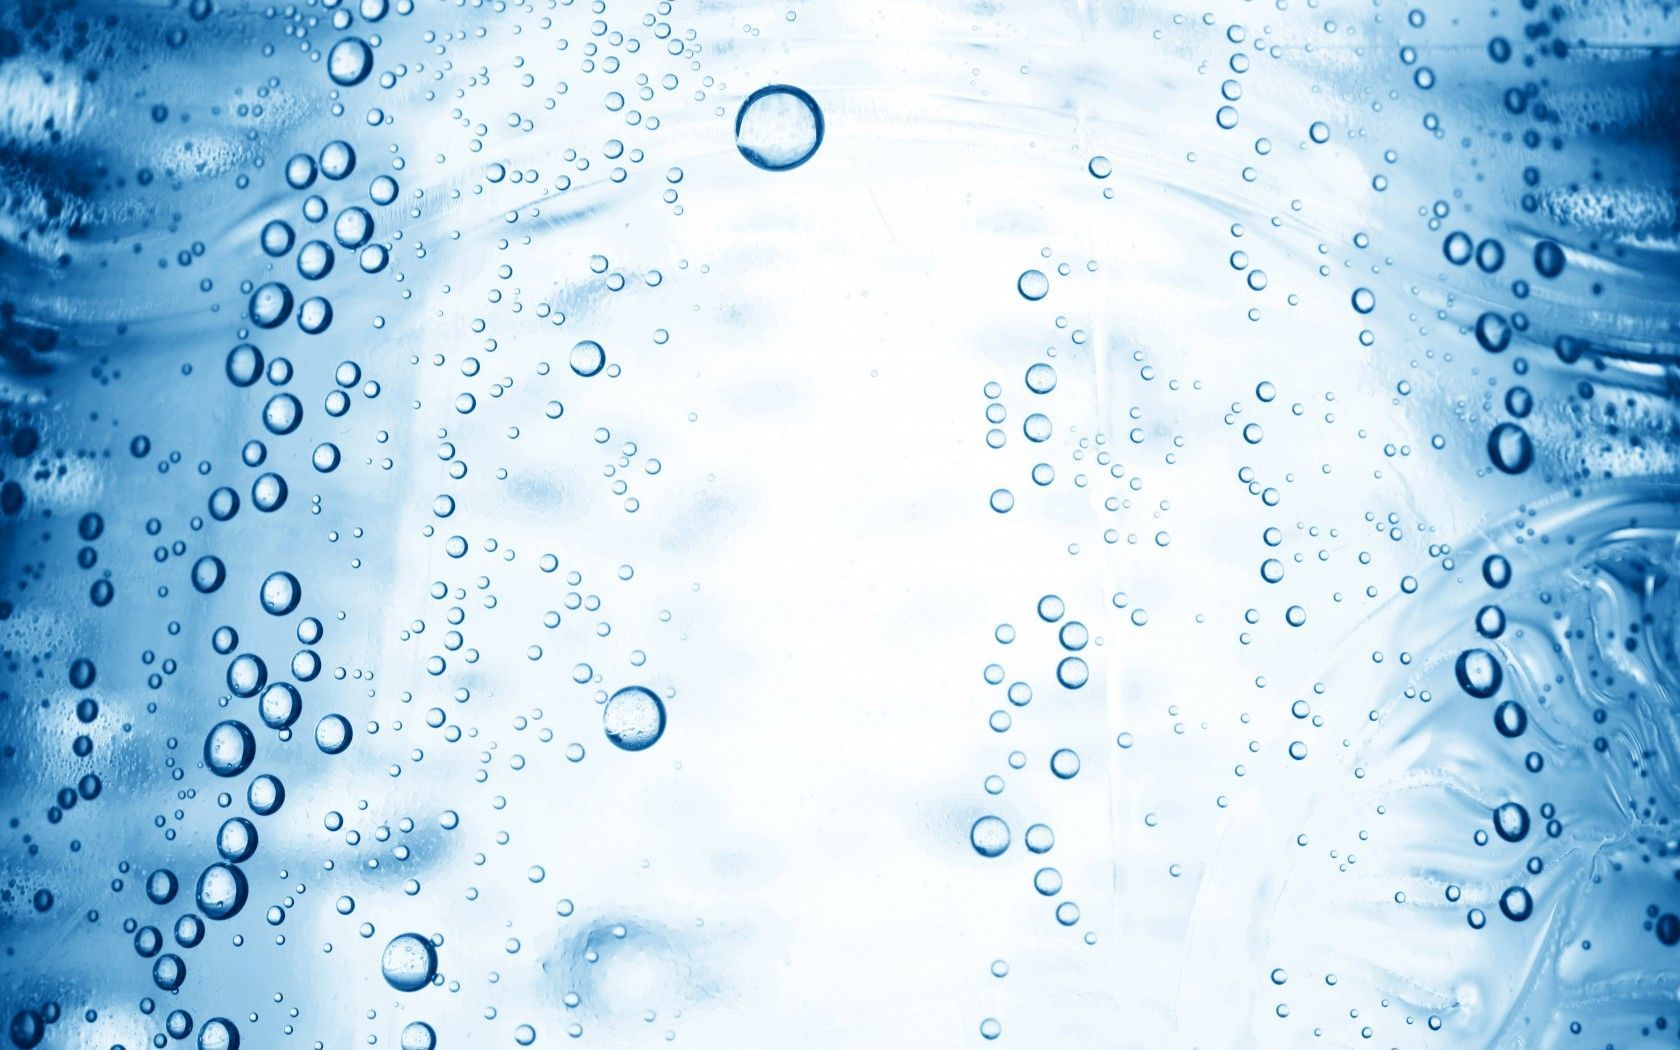 Water Bubble Wallpaper